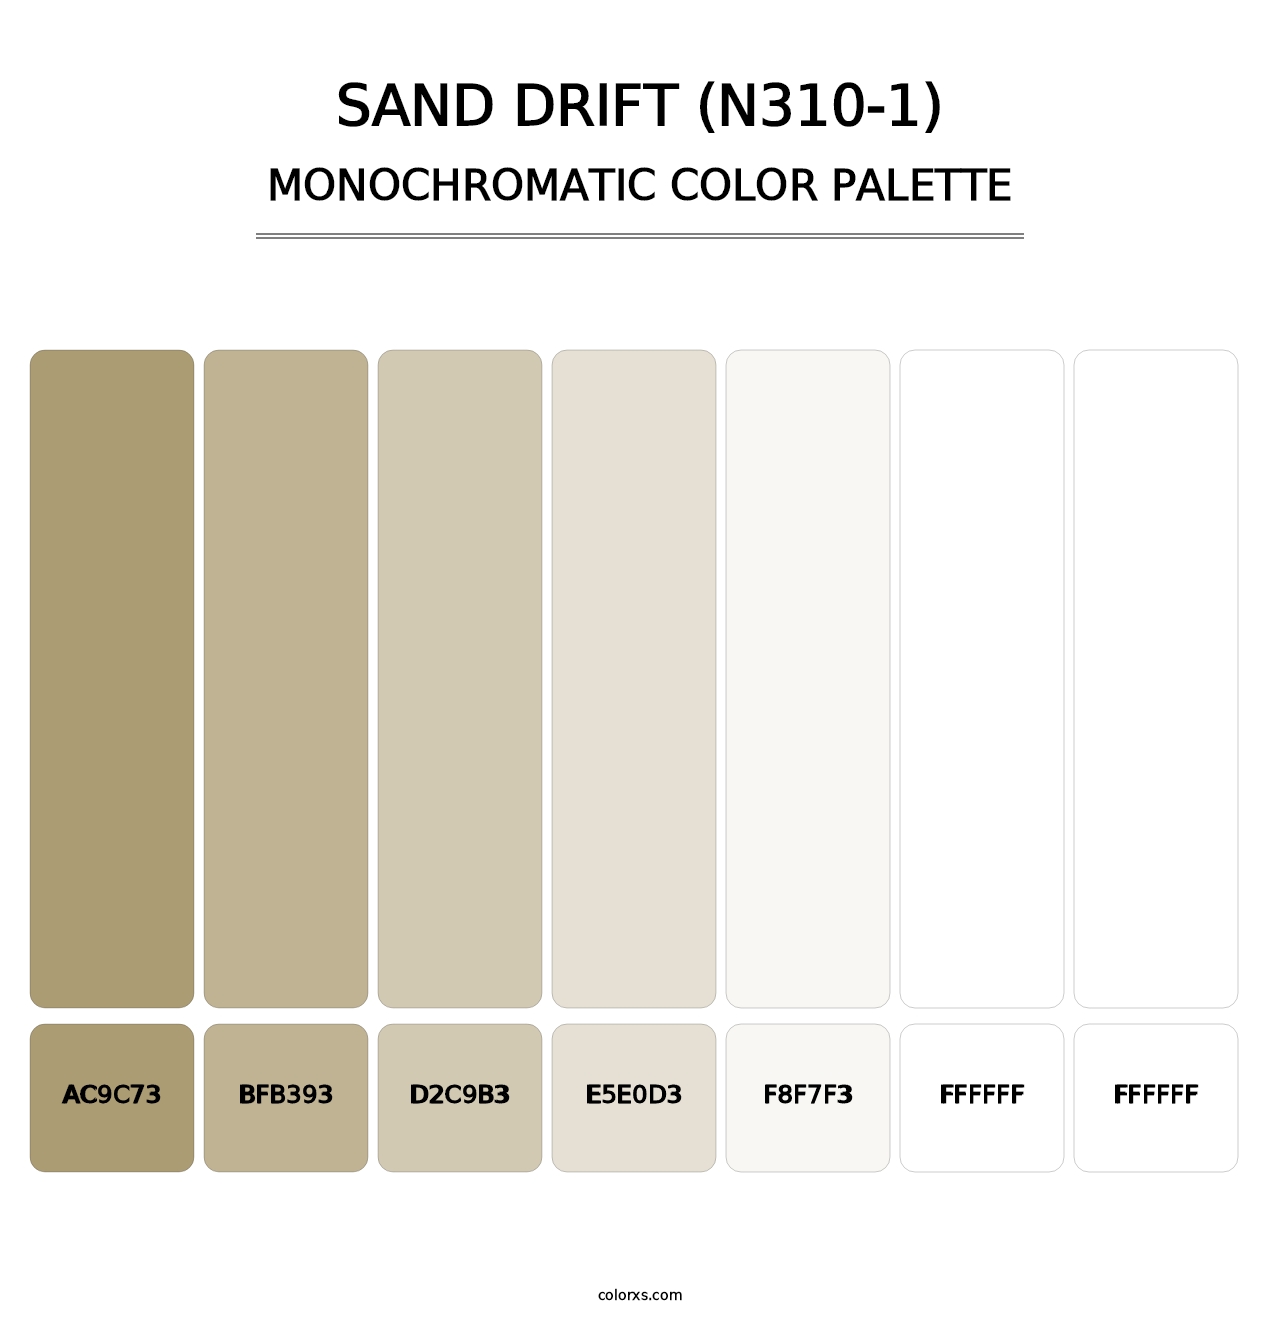 Sand Drift (N310-1) - Monochromatic Color Palette